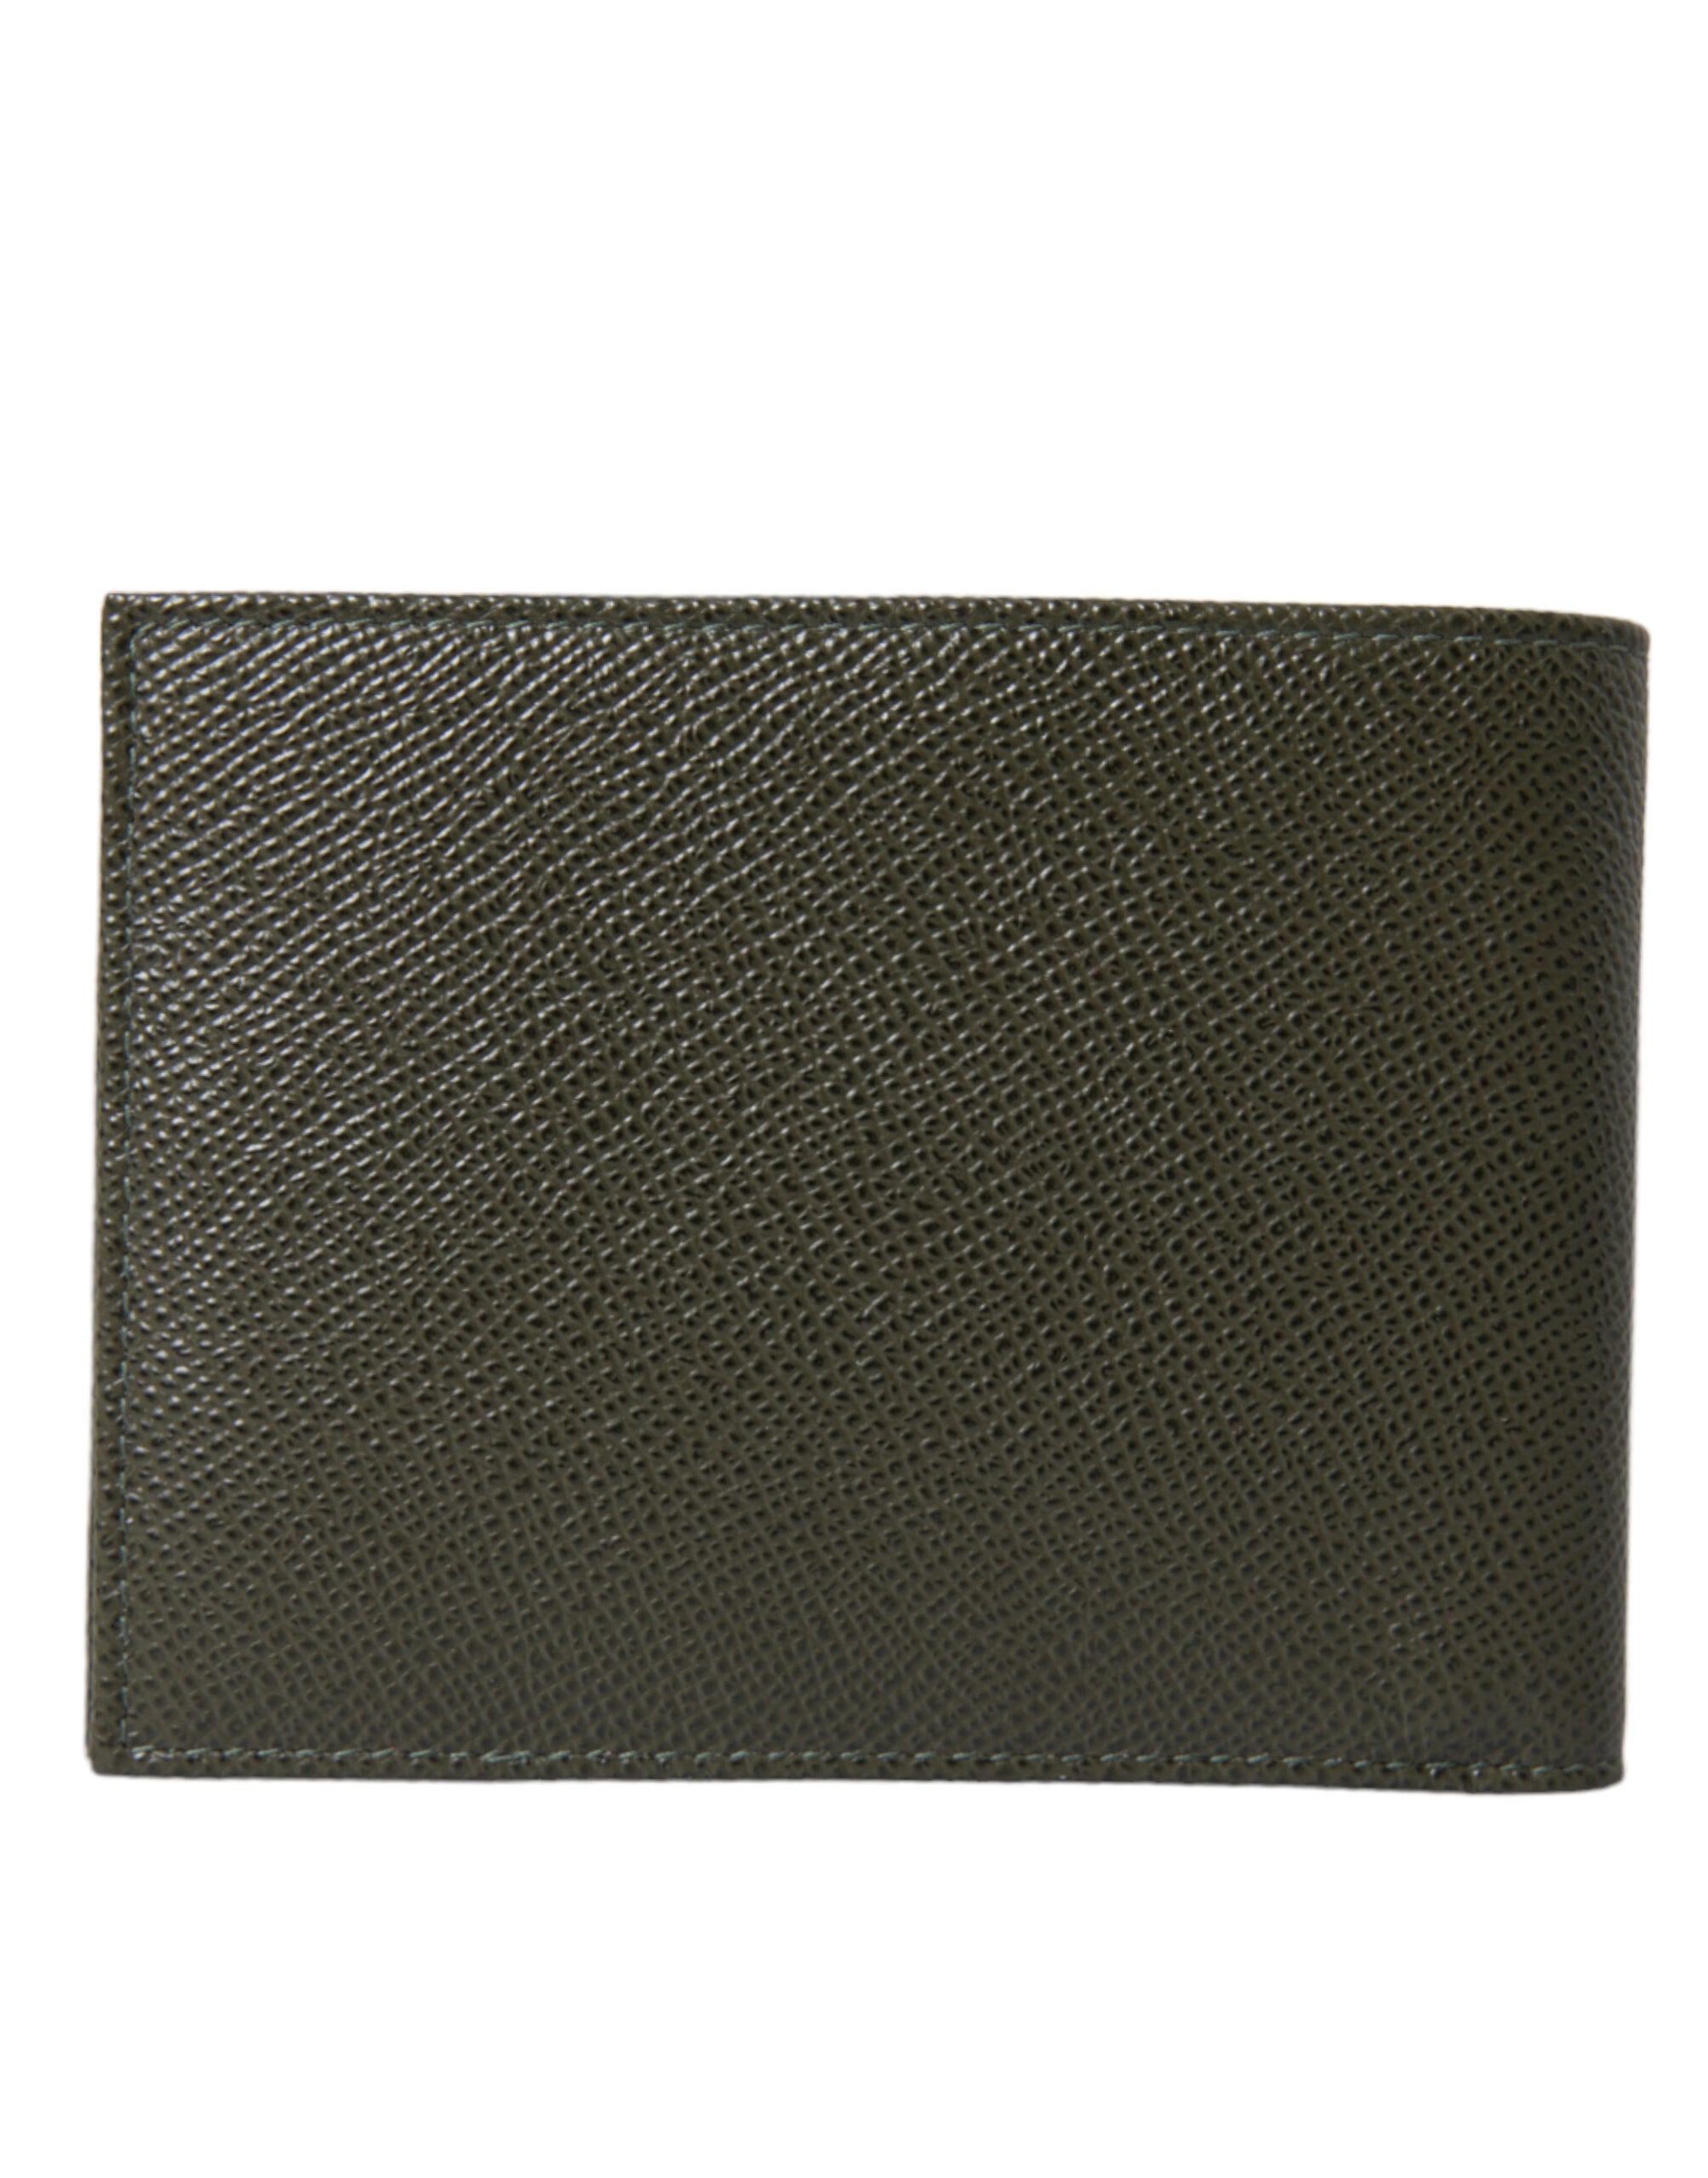 Elegant Olive Green Leather Bifold Wallet